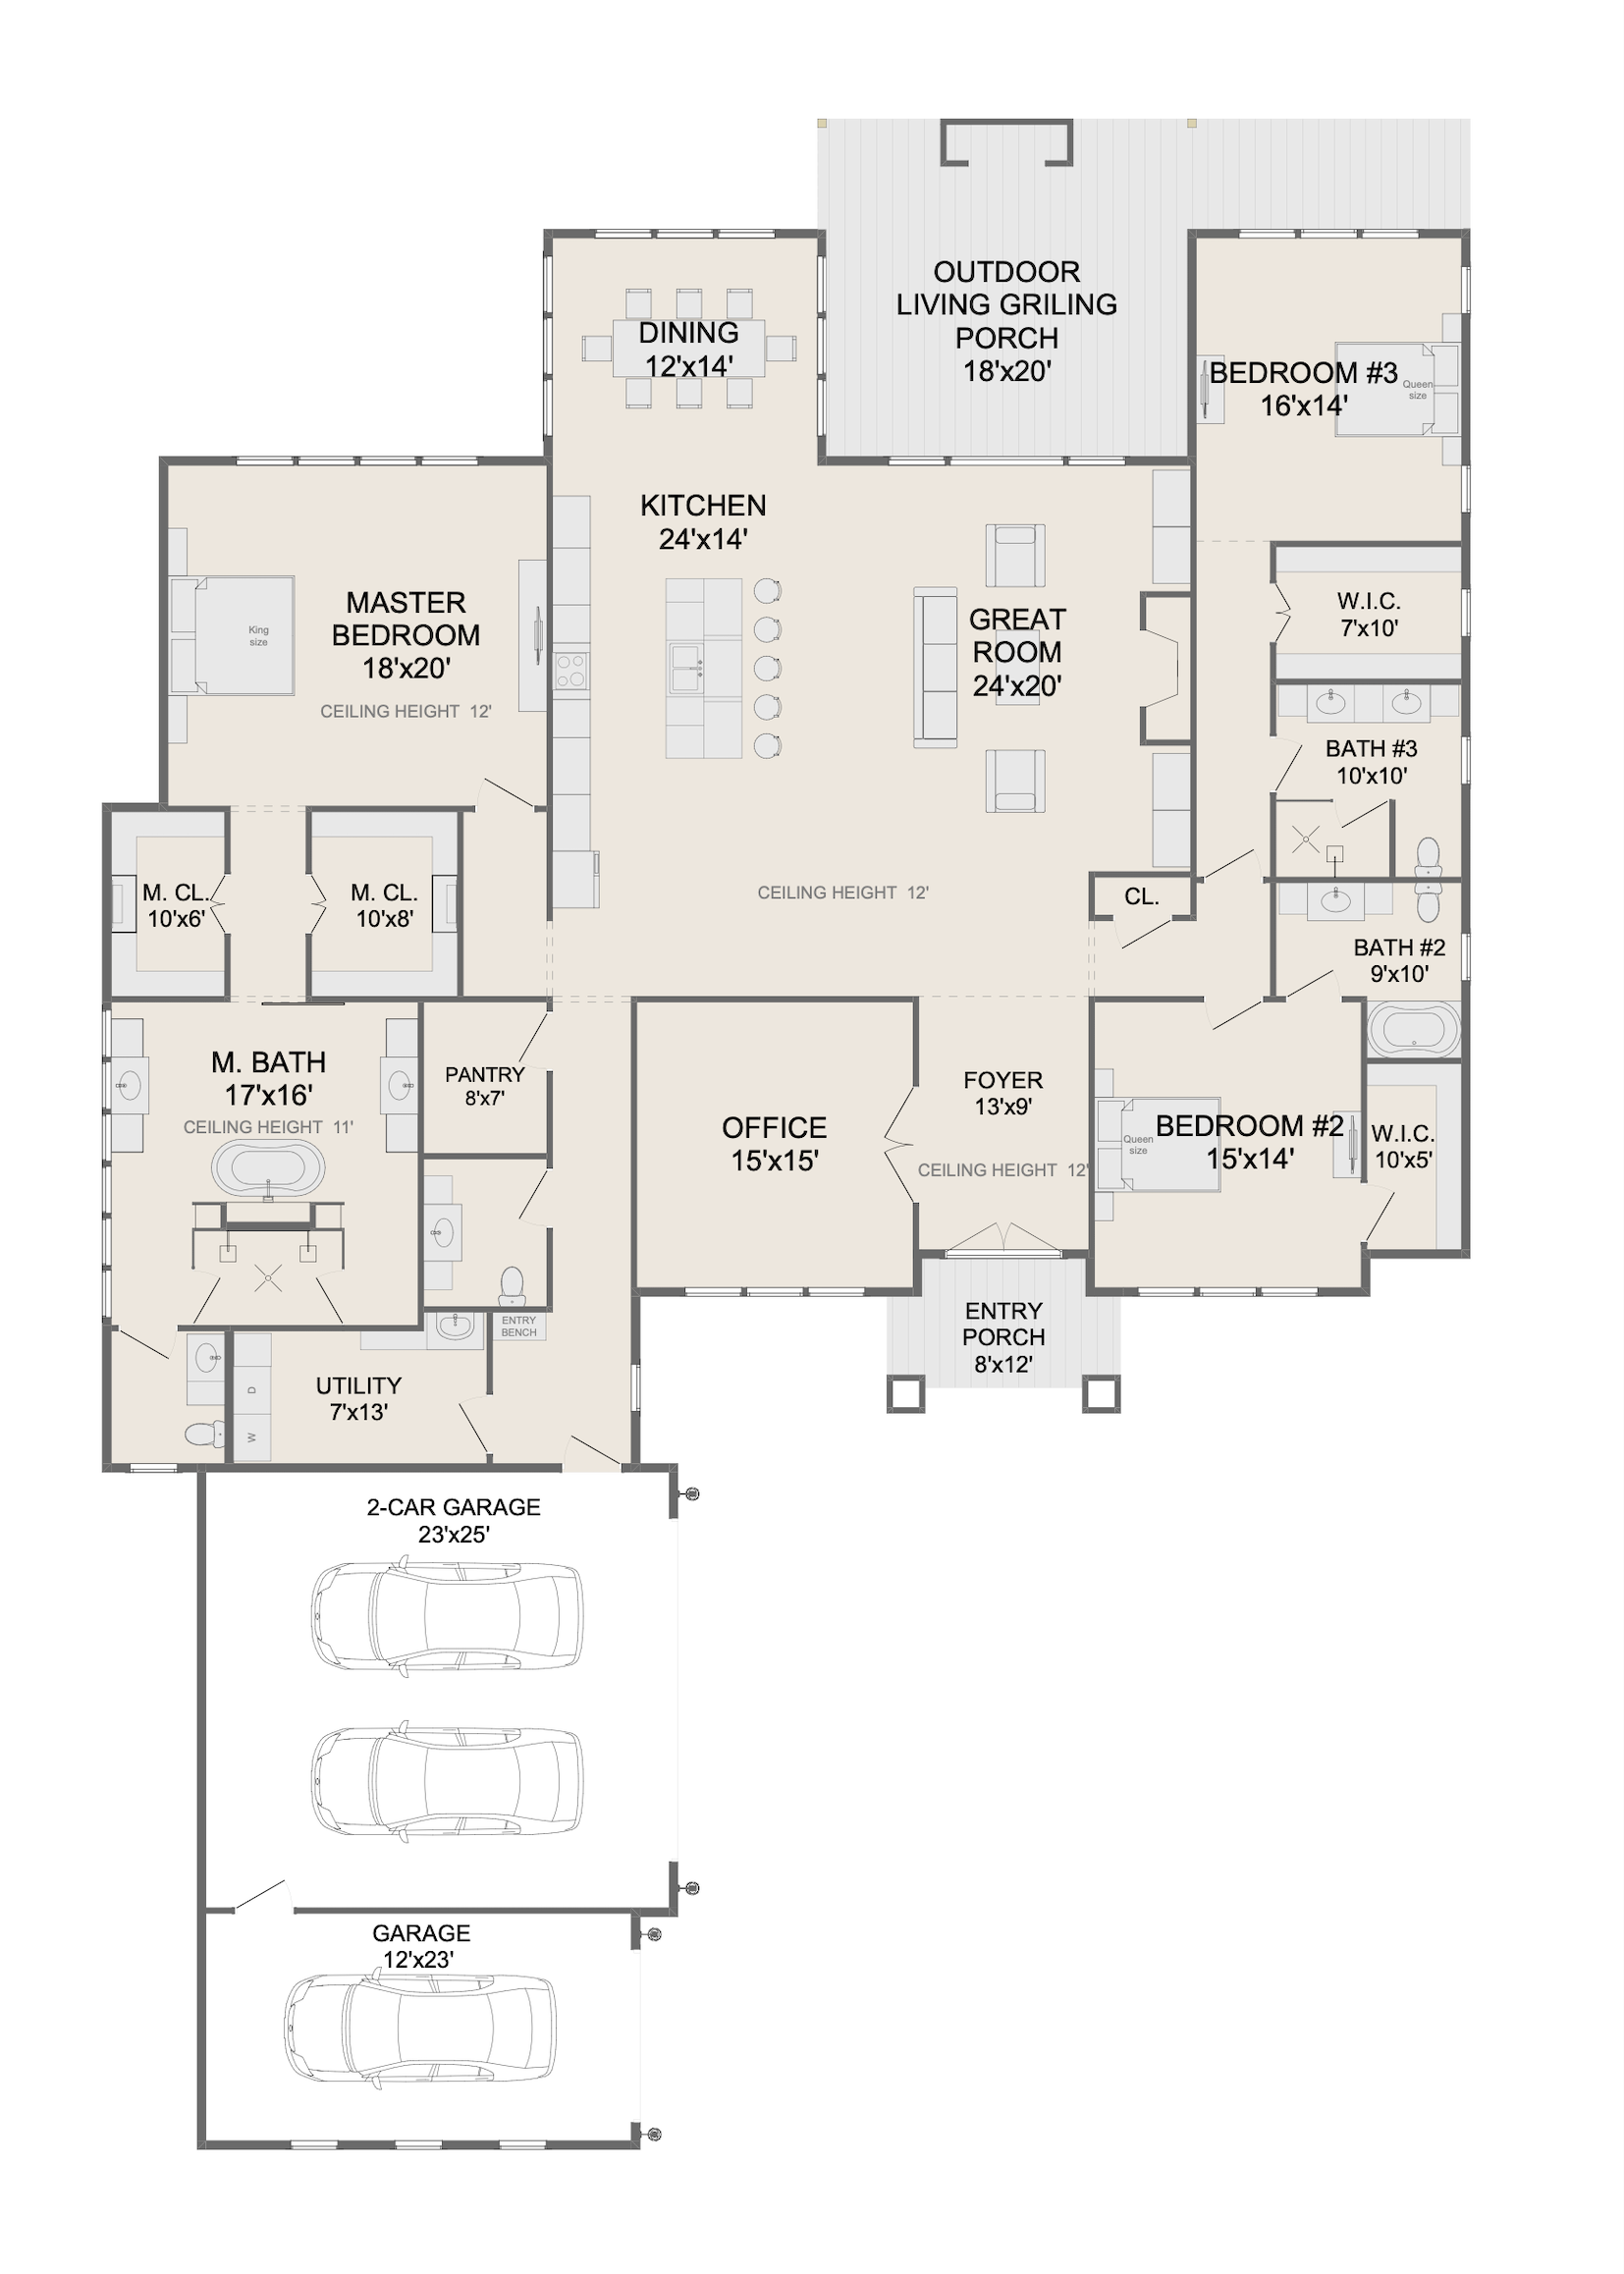 White House. Floor Plans for Family Houses, New House Plans